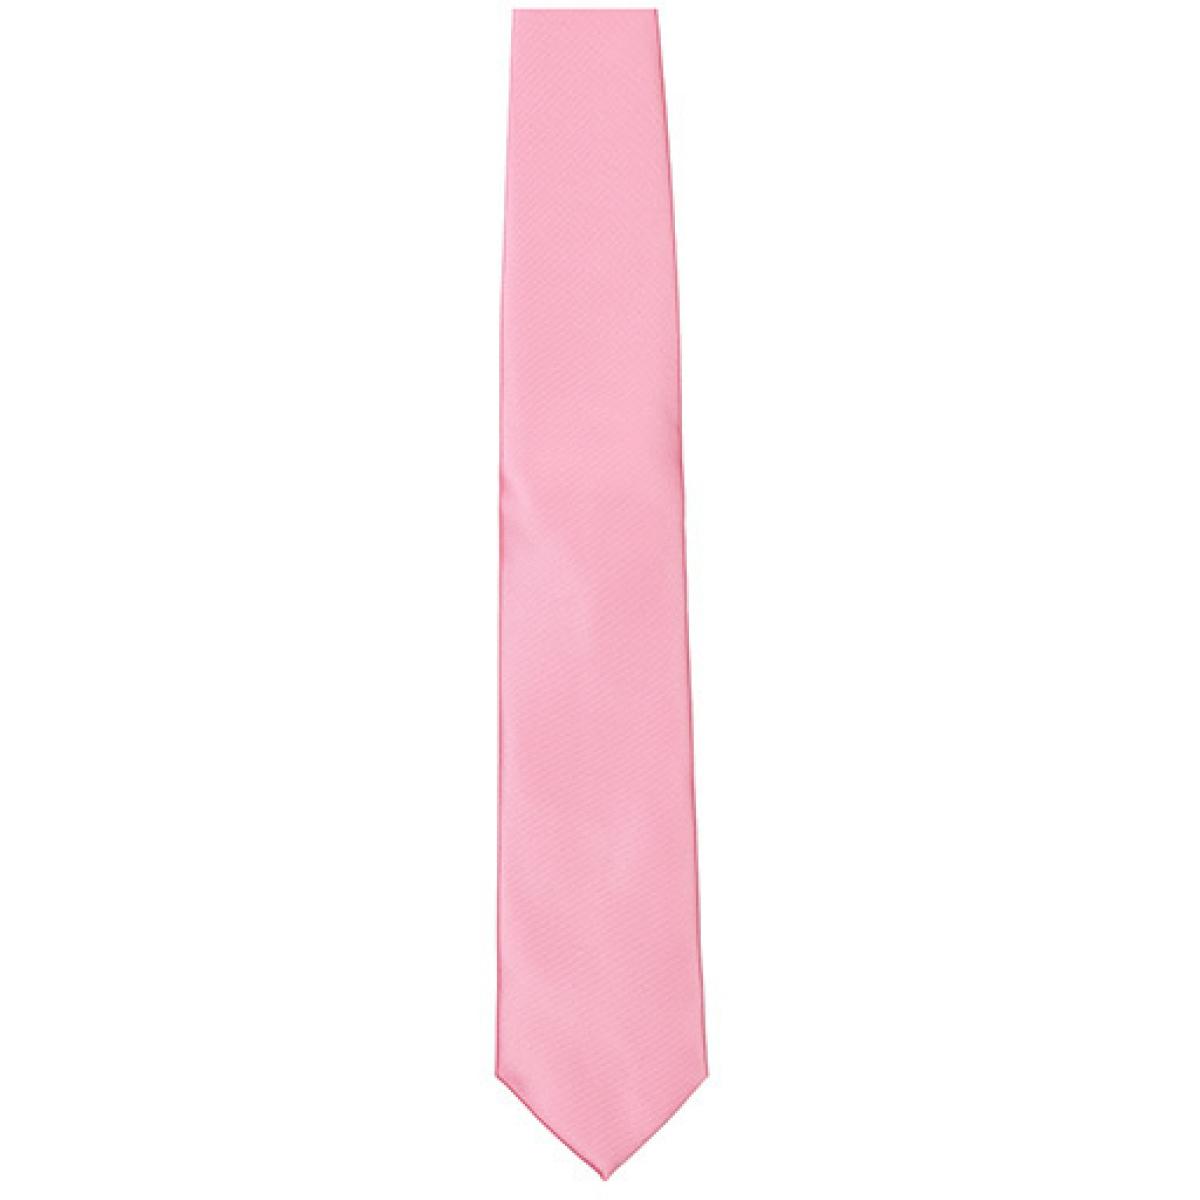 Hersteller: TYTO Herstellernummer: TT901 Artikelbezeichnung: Satin Tie / 144 x 8,5cm /  Zu 100% von Hand genäht Farbe: Pink